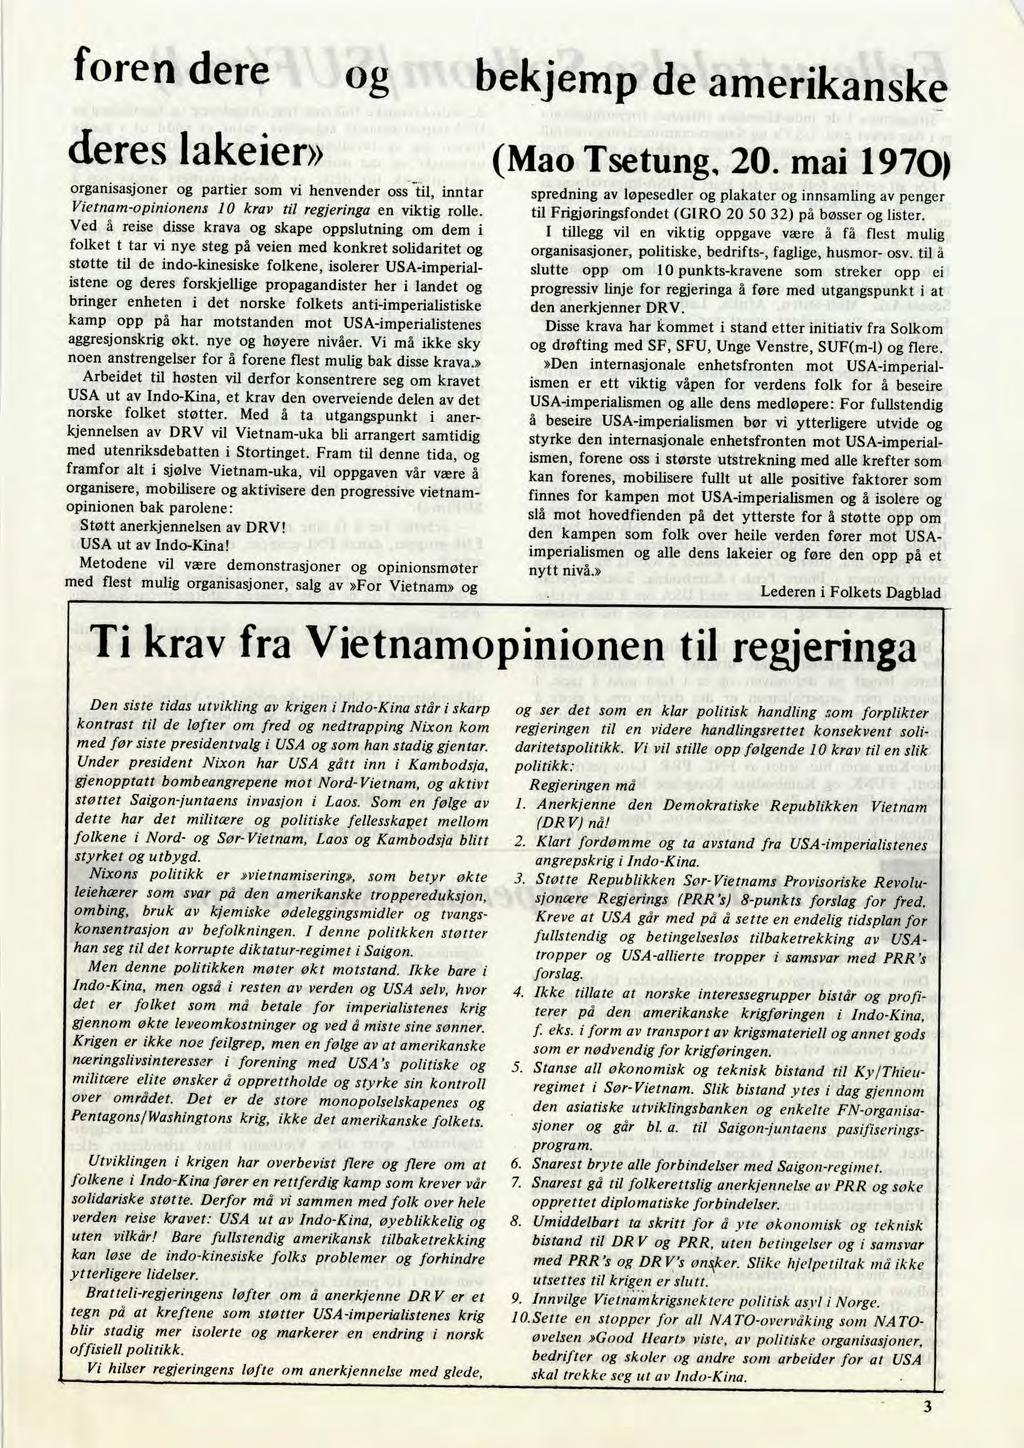 foren dere og bekjemp de amerikanske deres lakeier» organisasjoner og partier som vi henvender oss til, inntar Vietnam-opinionens 10 krav til regjeringa en viktig rolle.